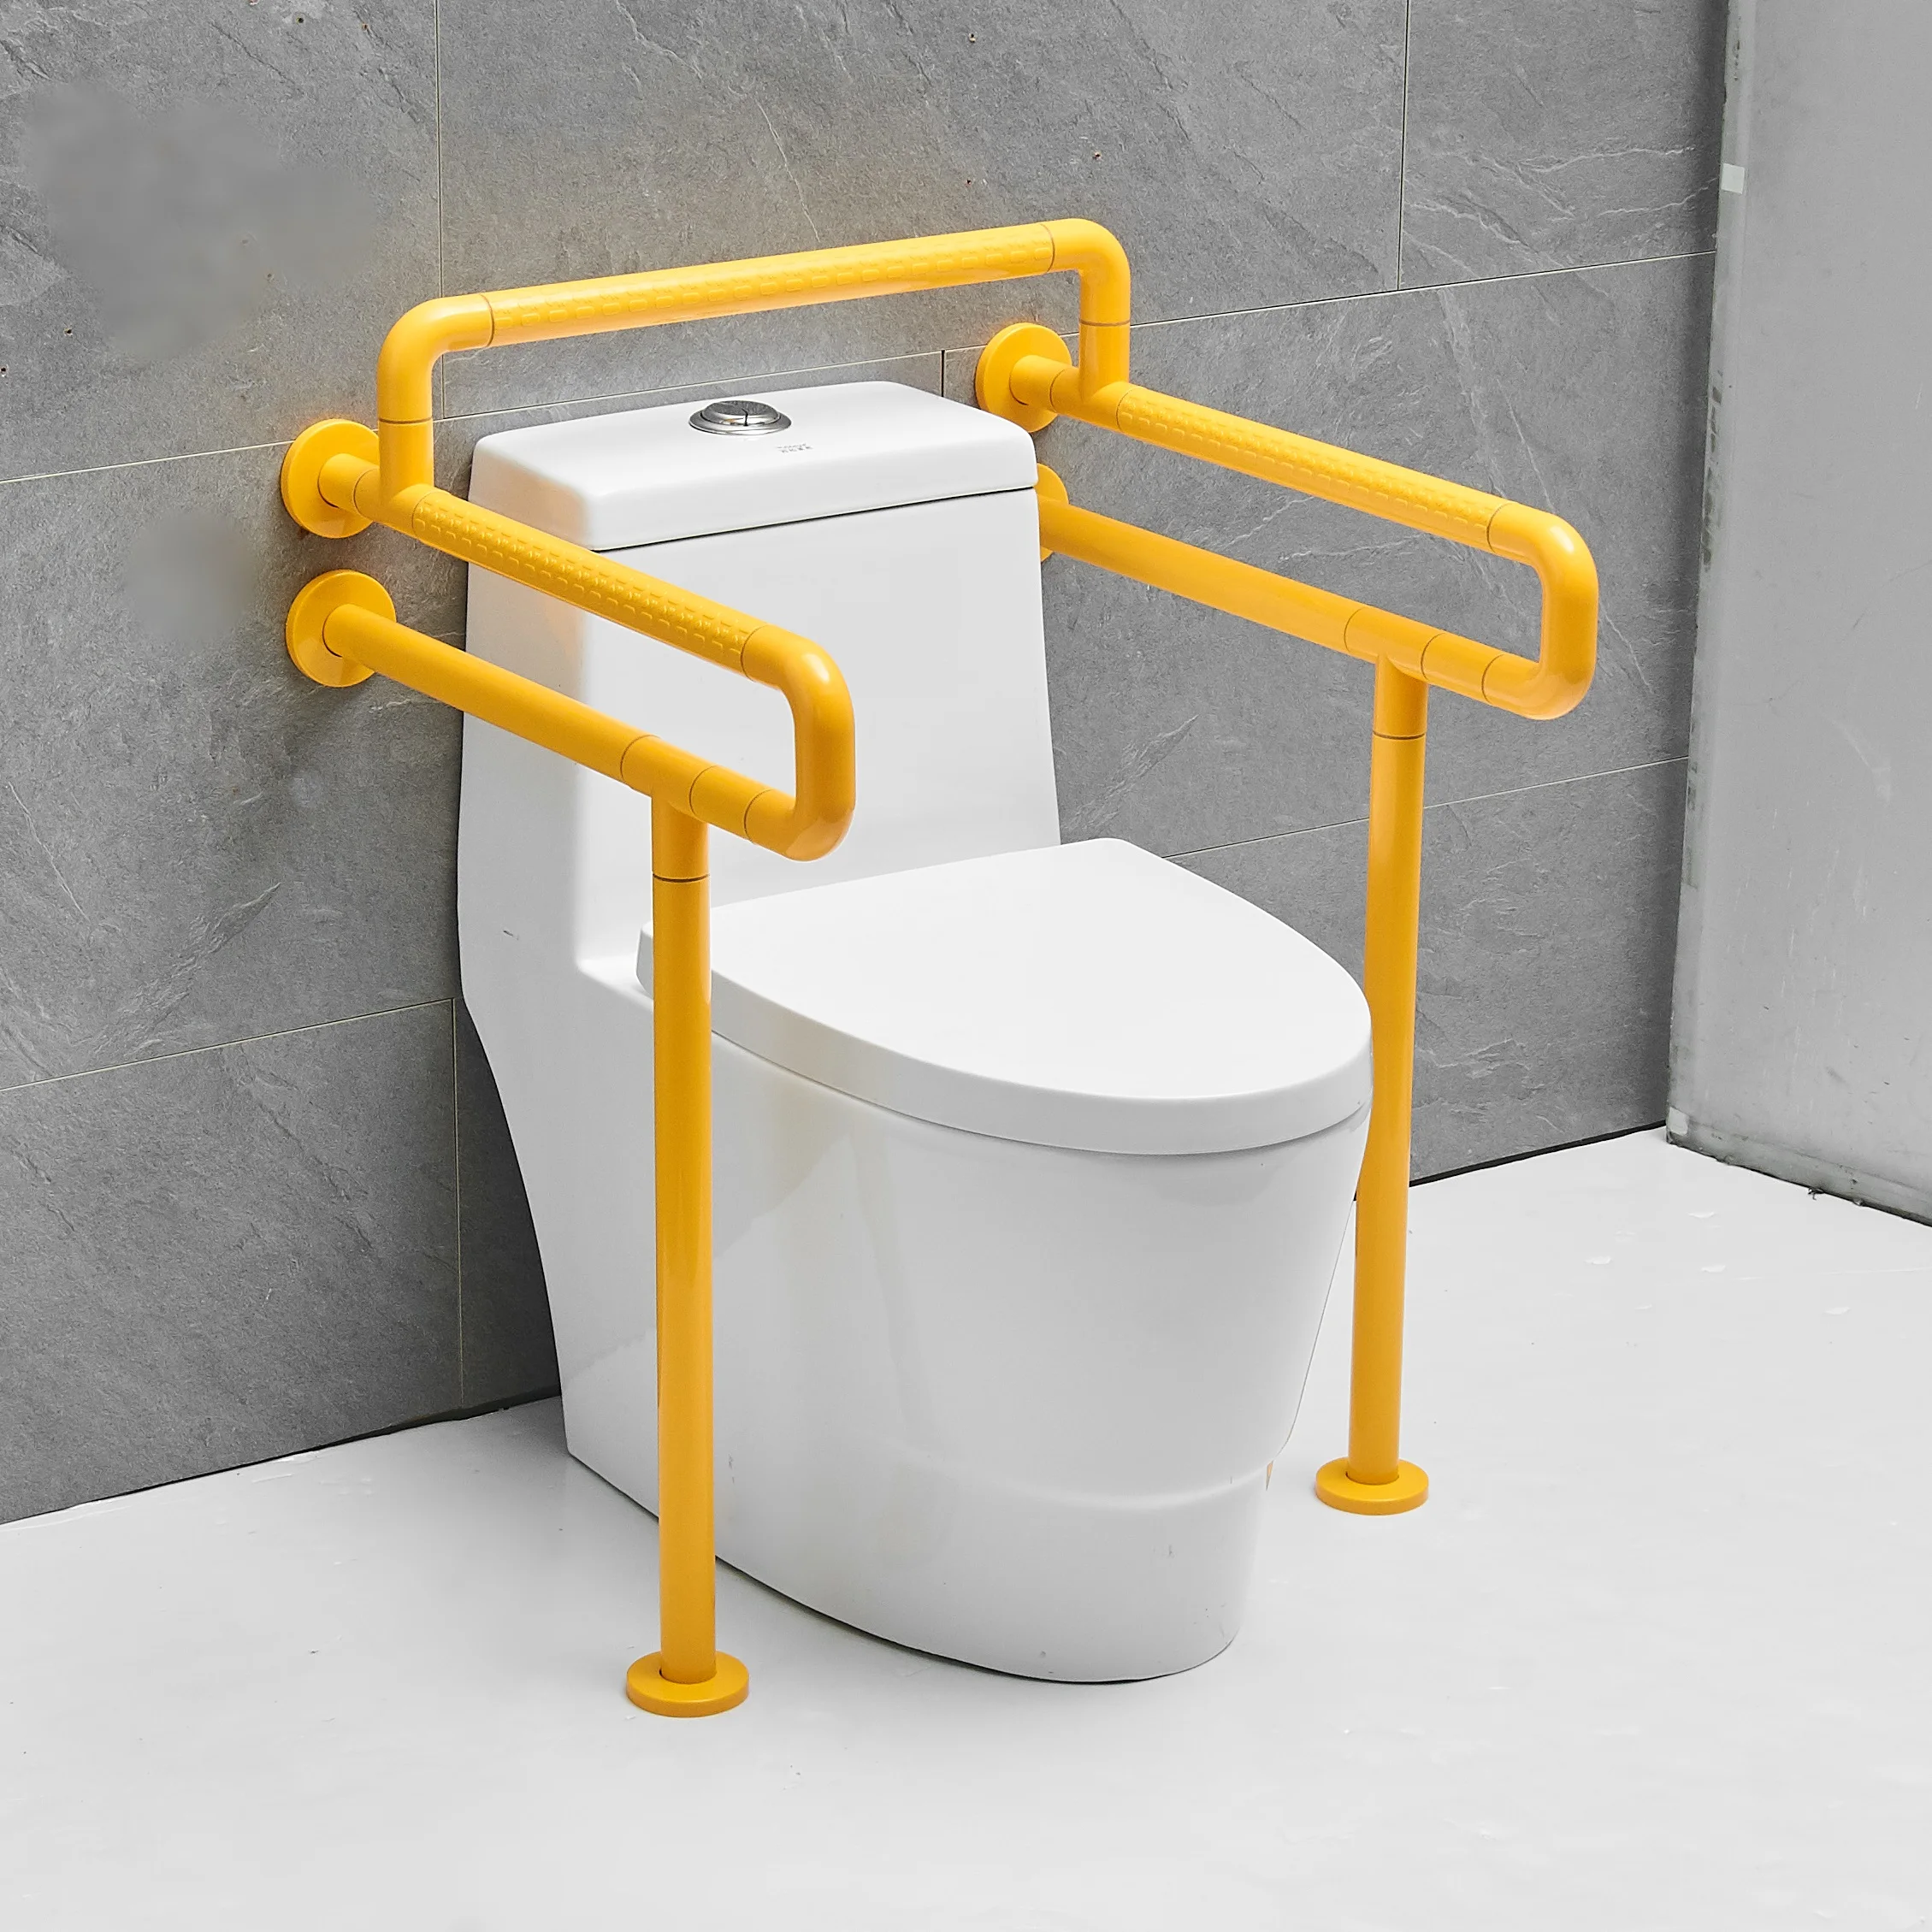 老年减肥残疾人浴室支持厕所安全导轨不锈钢残疾人扶手扶手栏杆